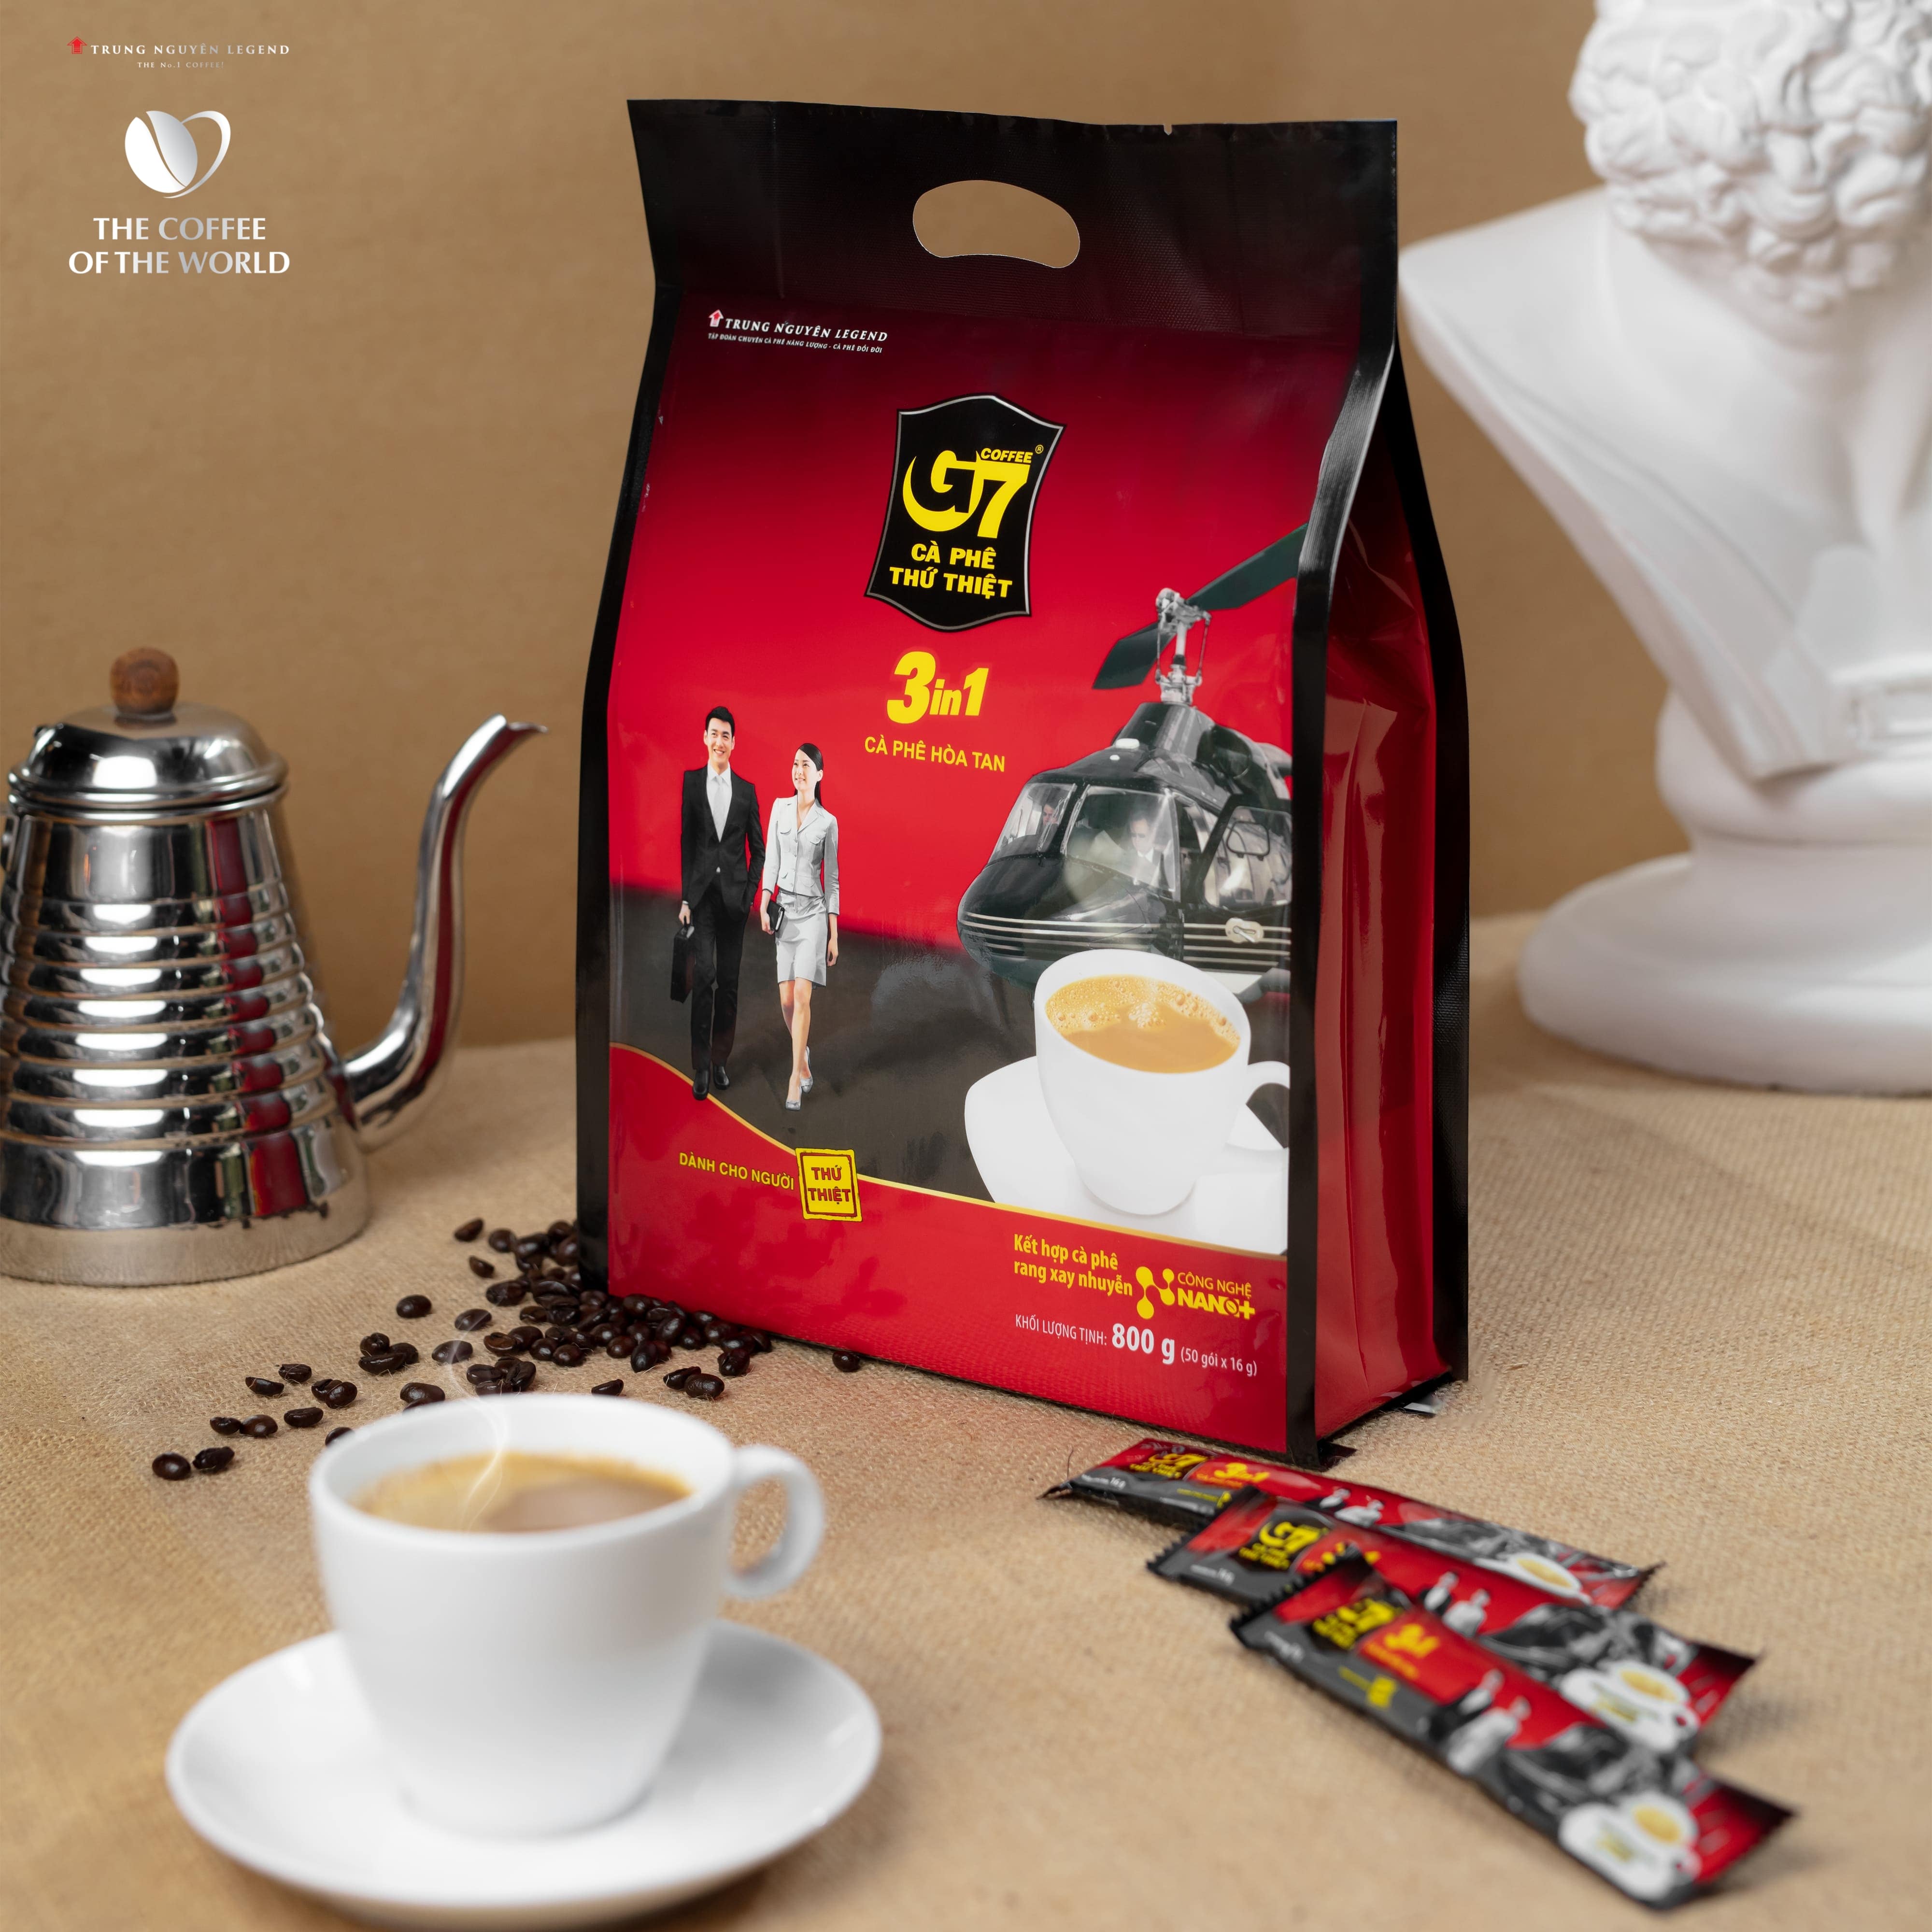 Trung Nguyên Legend - Cà phê hòa tan G7 3in1 - Bịch 50 sticks x 16gr (gói dài)